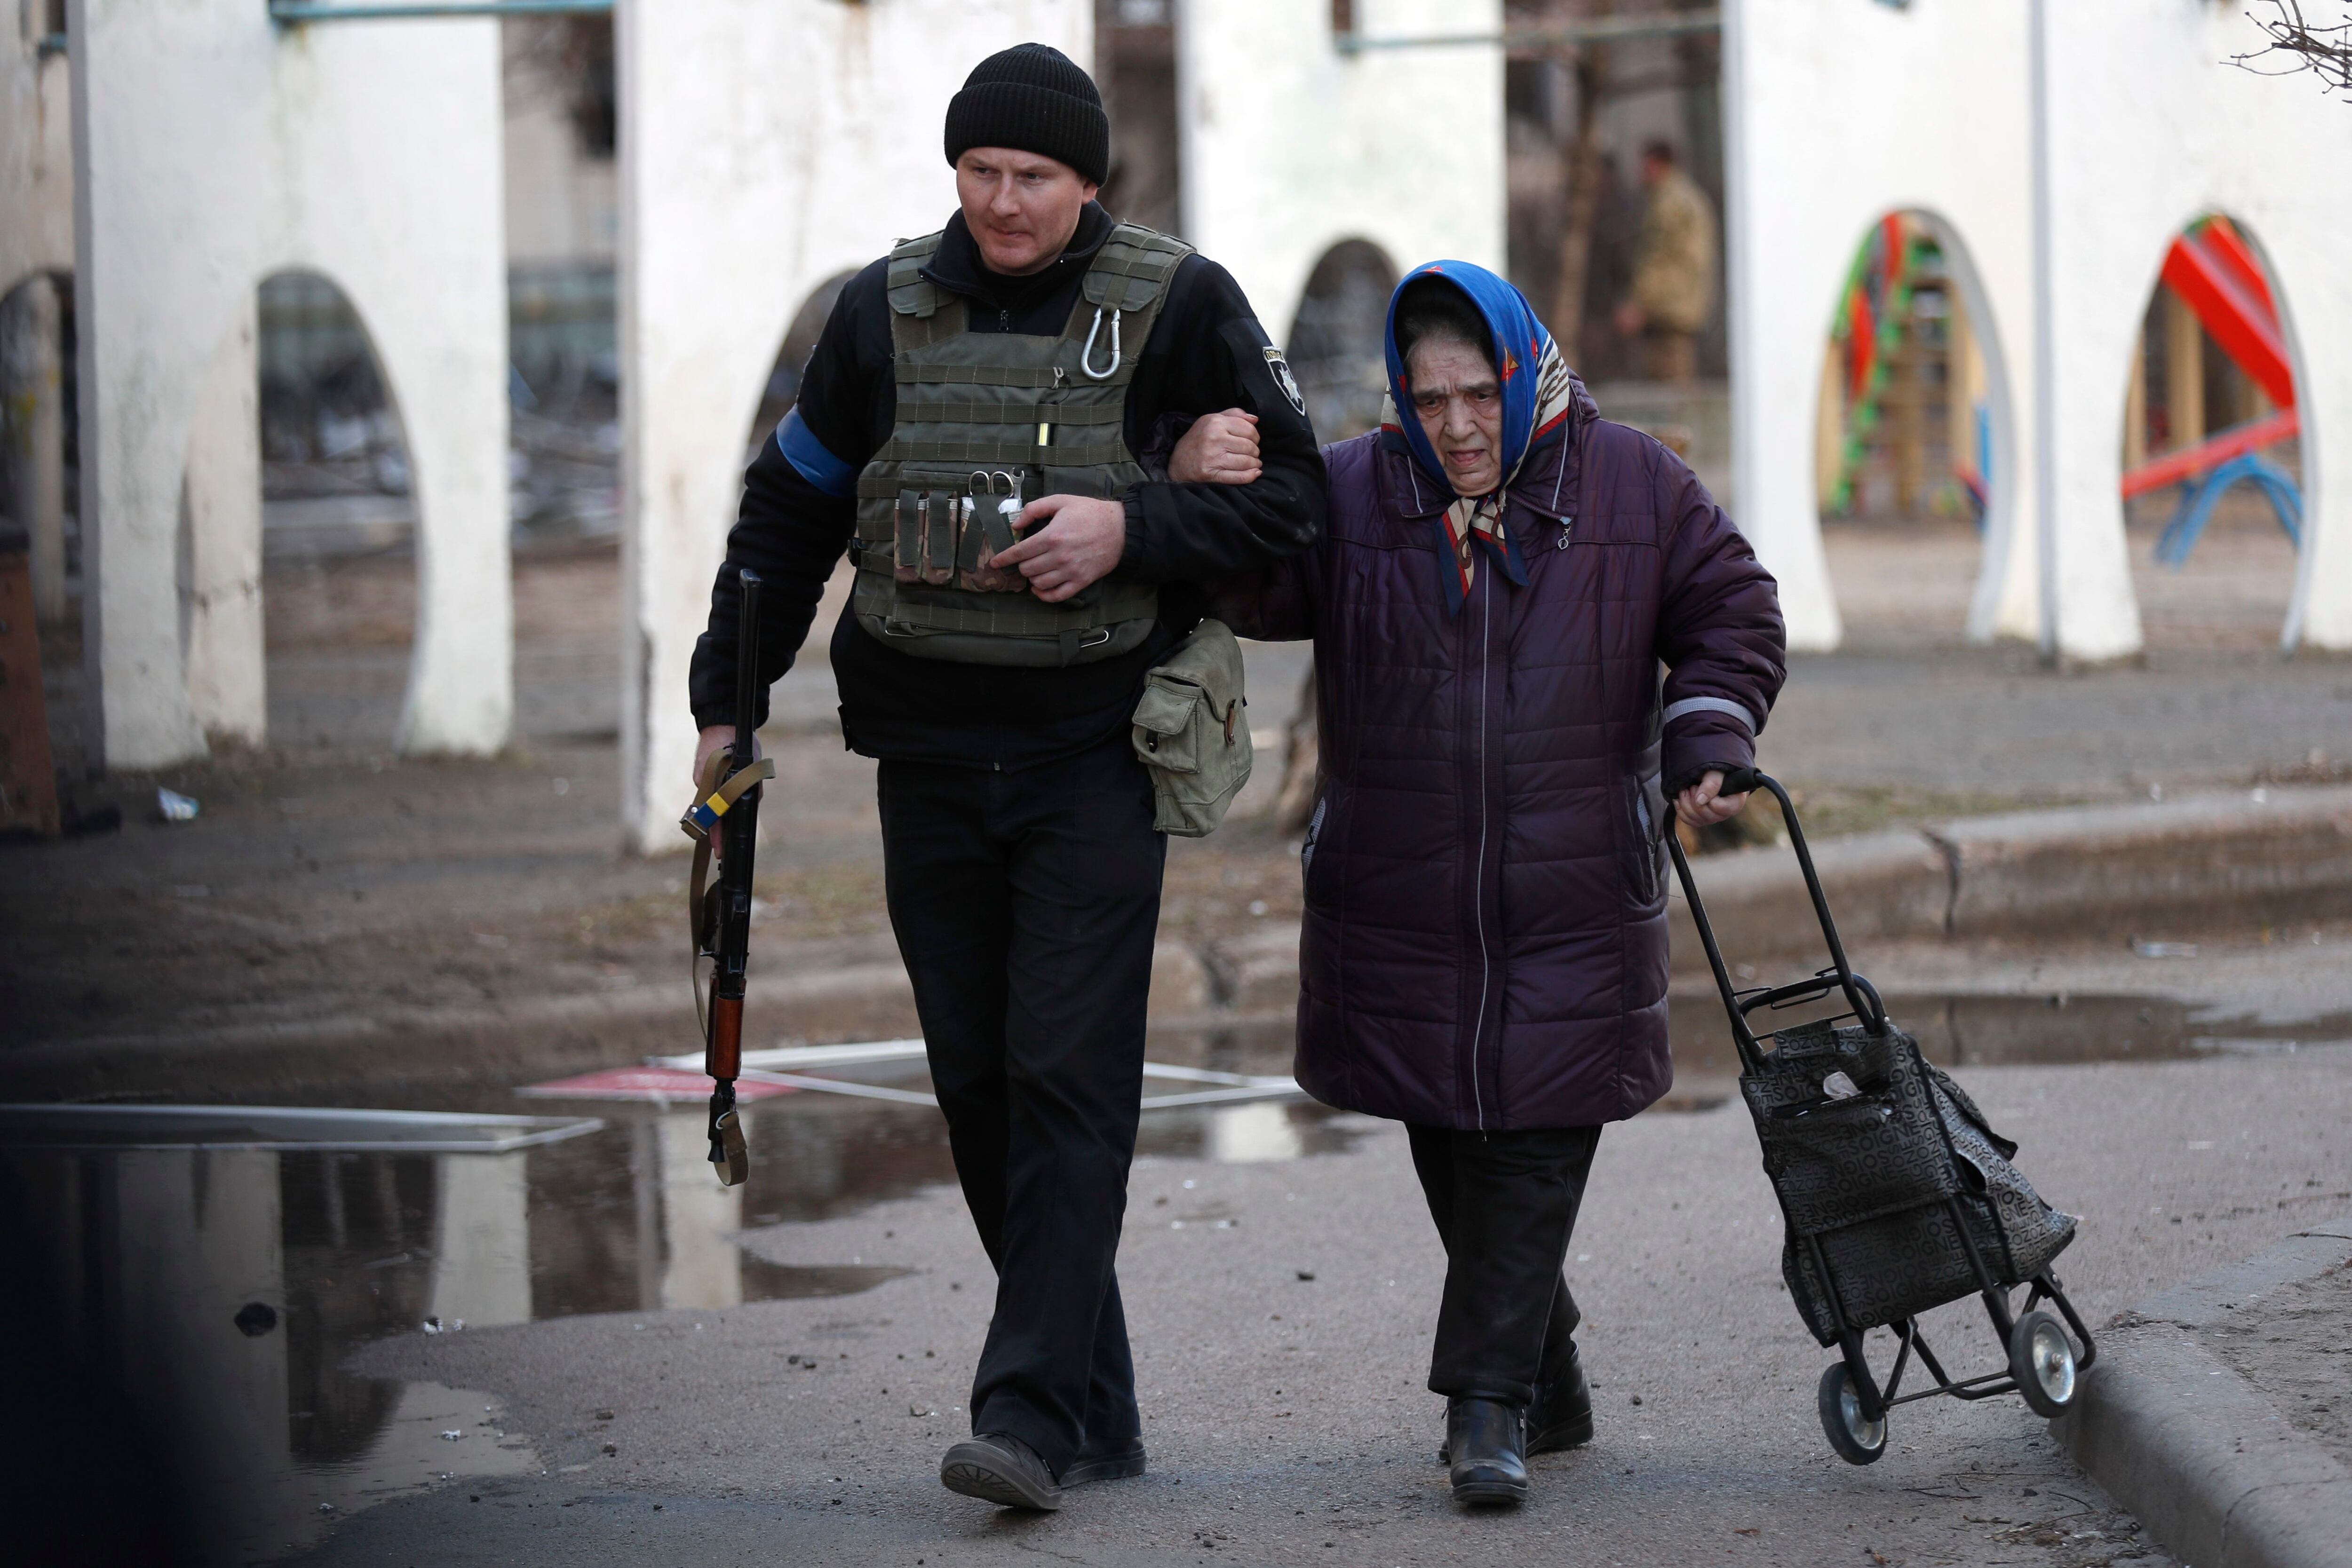 Un policía ucraniano ayuda a evacuar a una mujer de un edificio alcanzado por misiles rusos este domingo. El 24 de febrero las tropas rusas entraron en territorio ucraniano en lo que el presidente ruso declaró "una operación militar especial", que ha provocado un enorme flujo de refugiados, combates, destrucciones en el país y múltiples sanciones contra Rusia. EFE/ Atef Safadi 